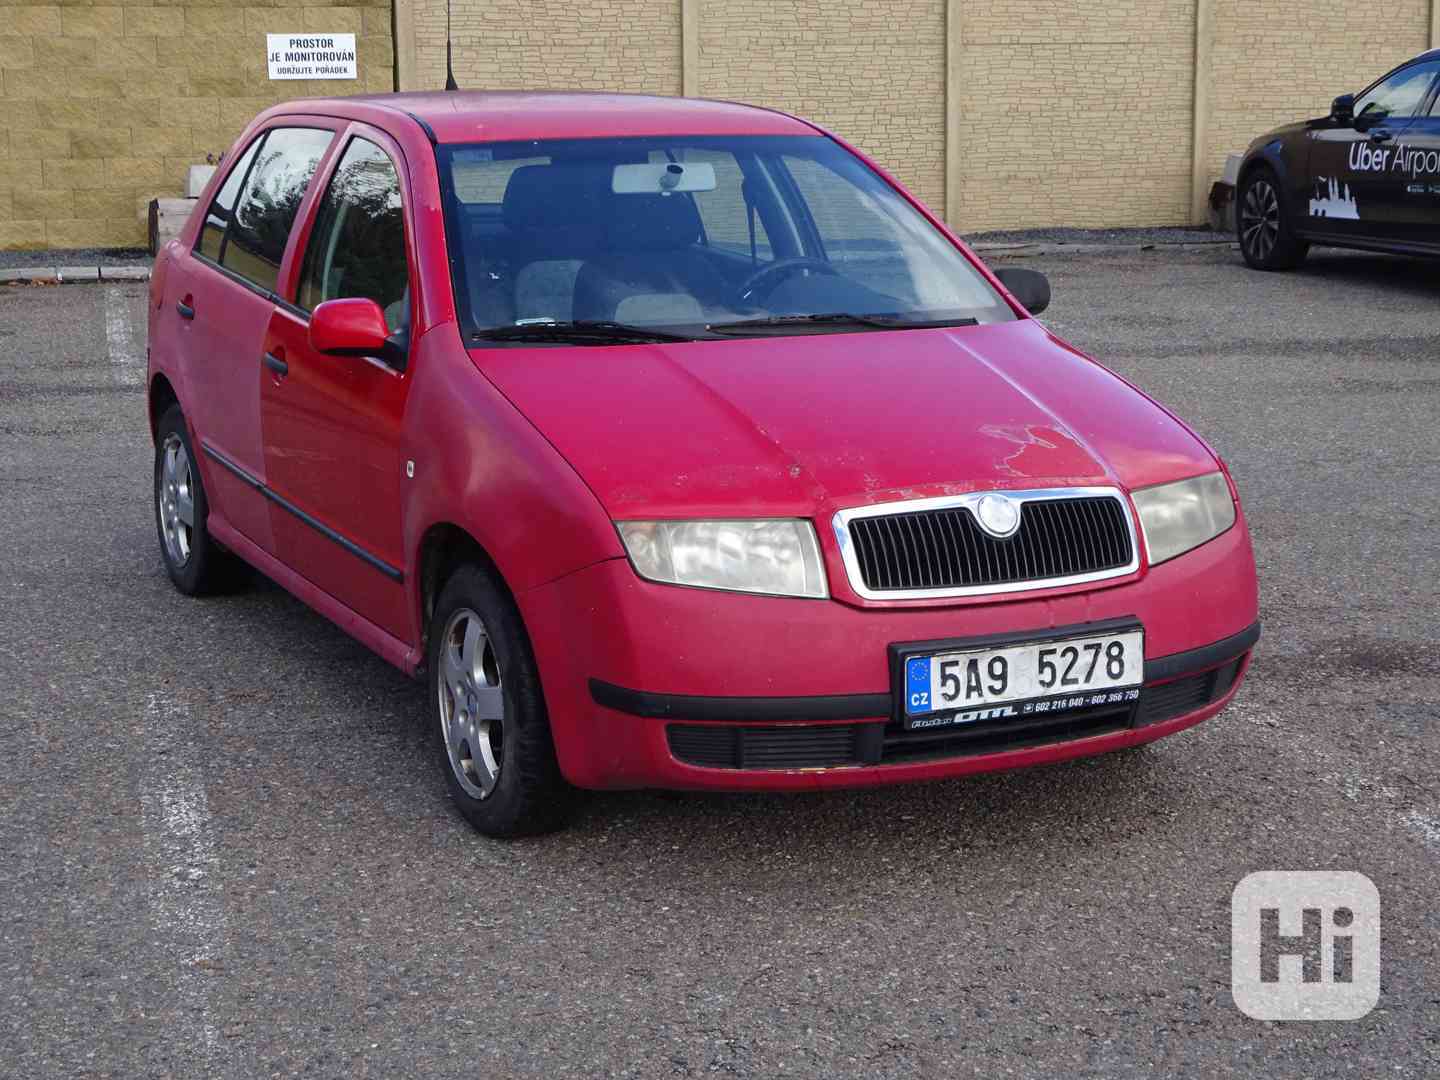 Škoda Fabia 1.4i r.v.2003 (55 kw) AUTOMAT (KLIMA) - foto 1